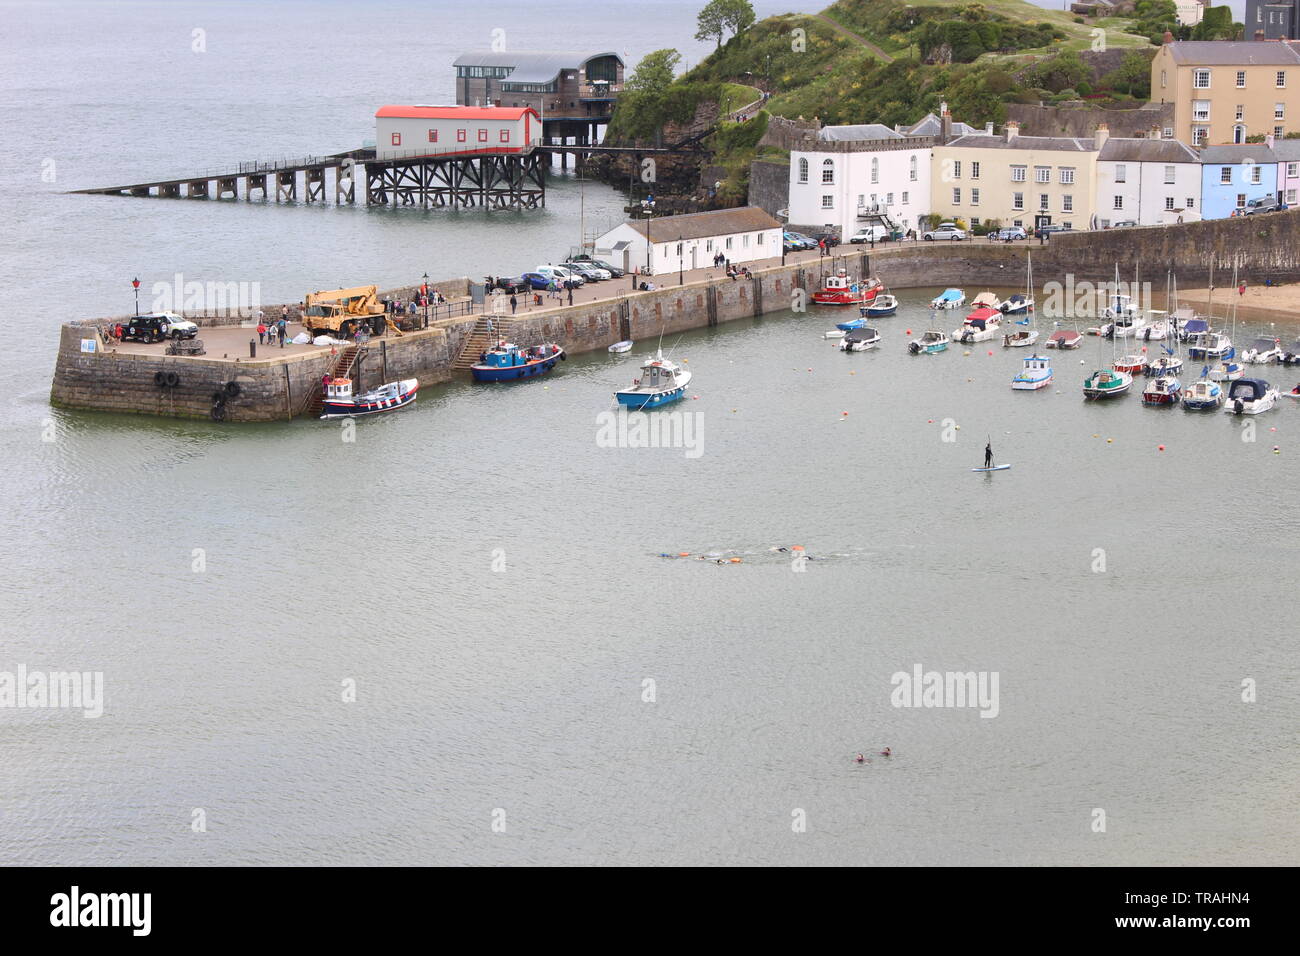 Ein Foto von Tenby Hafen, Pembrokeshire, Wales, UK. Boote, Häuser, Menschen genießen die Bank Holiday sonnige Wetter. Stockfoto